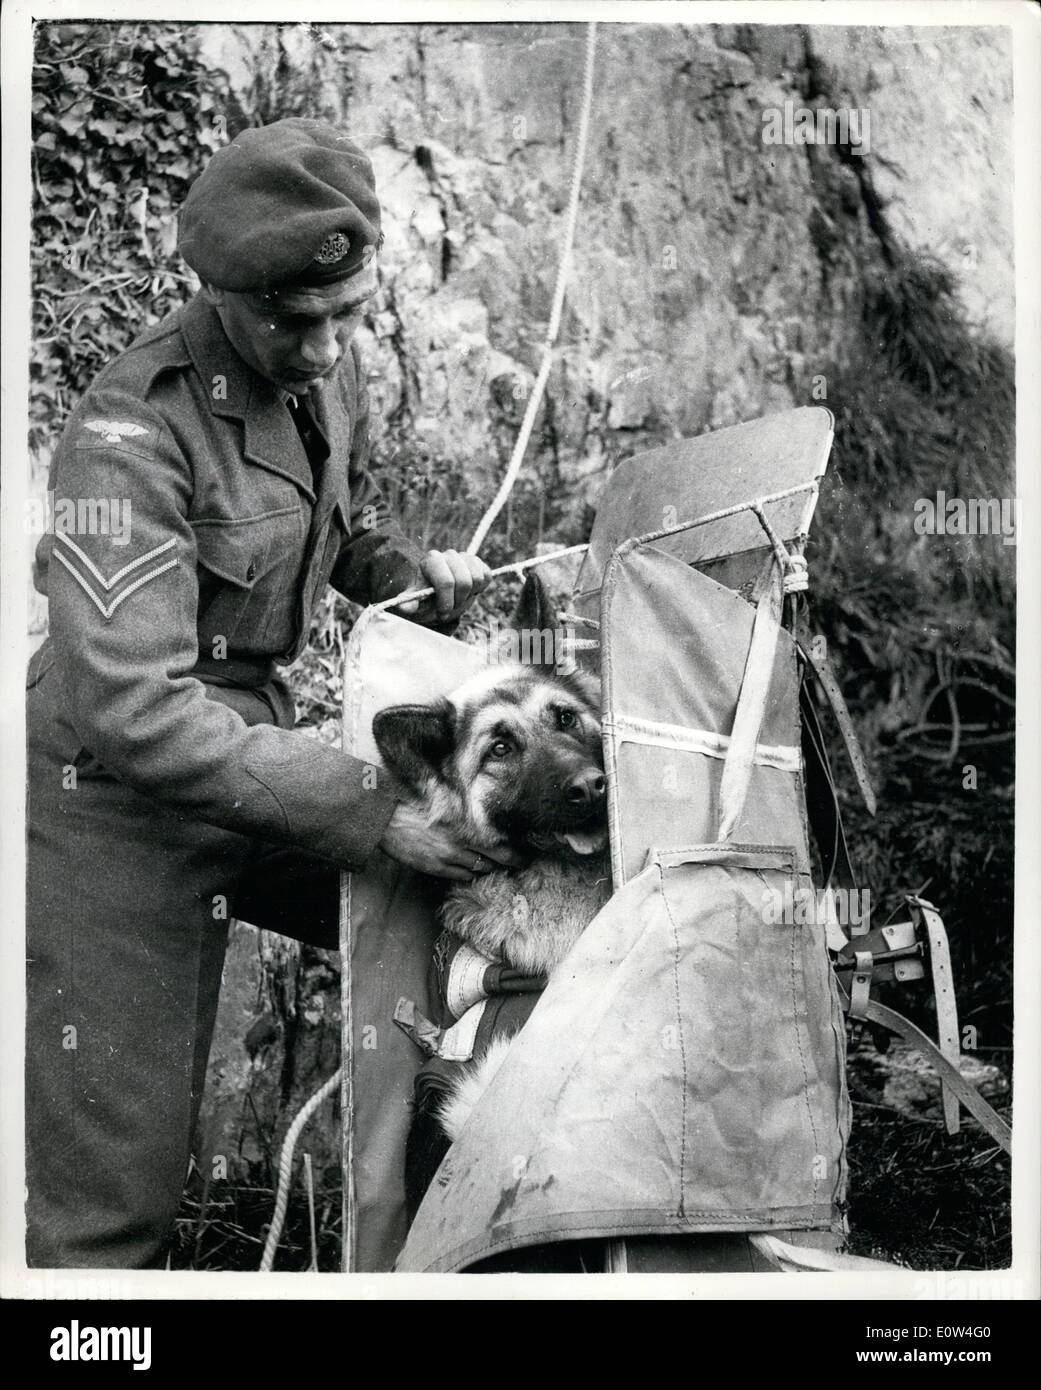 Apr 04, 1961 - zweihundert Fuß, wenn ein Hund der beste Freund eines Mannes ist. Neue Mountain Rescue Technik; Eine neue bodenständige Technik für Hunde wurde entwickelt durch die Bergrettung R.A.F-Männer - jetzt Proben für das königliche Turnier ein echter, Lebensdrama erlassen werden. Sie führen eine intensive Berg Seite Suche für einen abgestürzten Piloten mit Hilfe der RAF. Berühmten Hund Phao, der ihn findet. Der Pilot wird schwer verletzt und wird in einer speziellen Box auf der Rückseite des Retters geschnallt den Berghang hinunter genommen Stockfoto